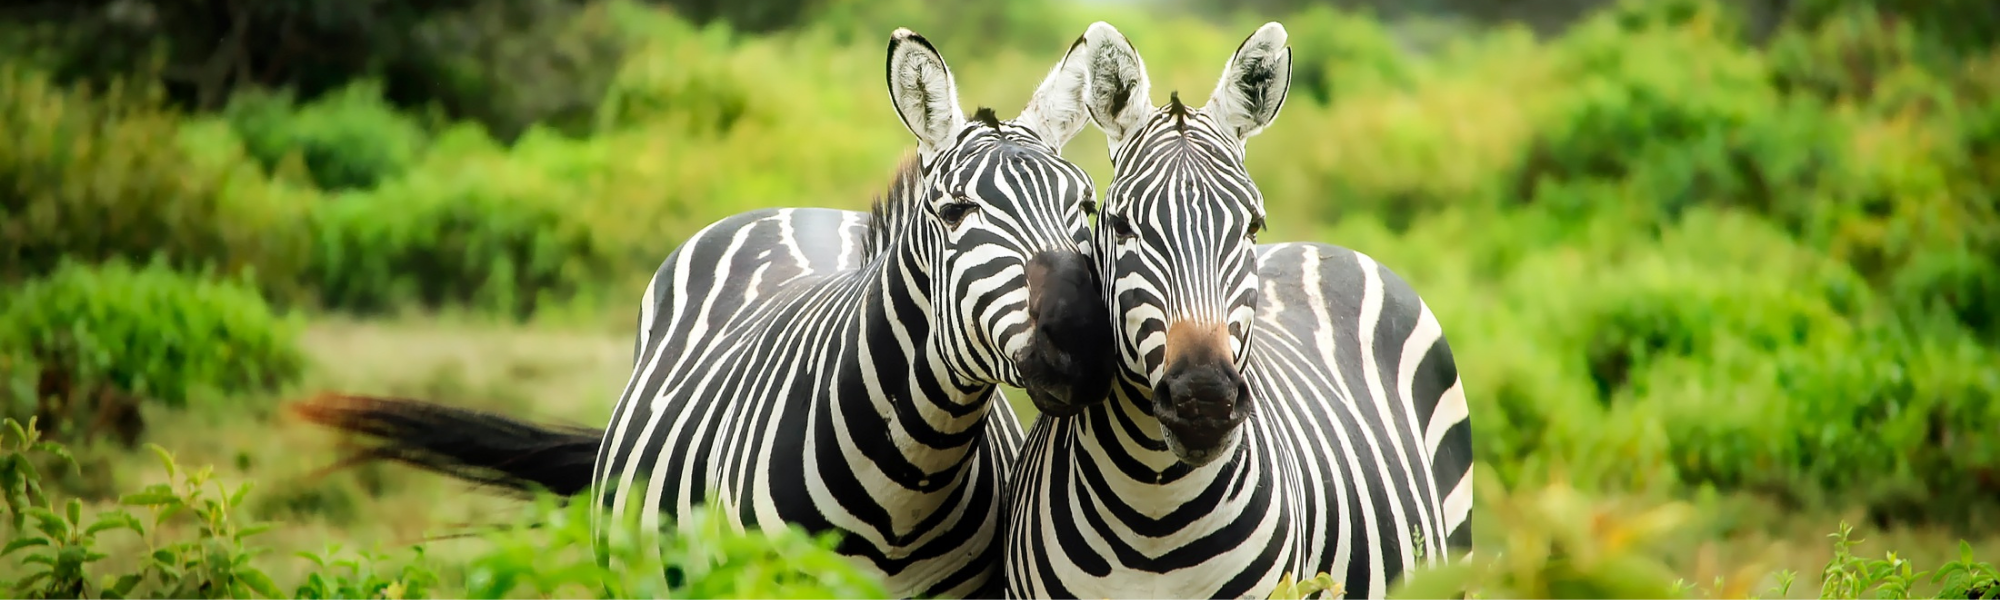 two Zebras 